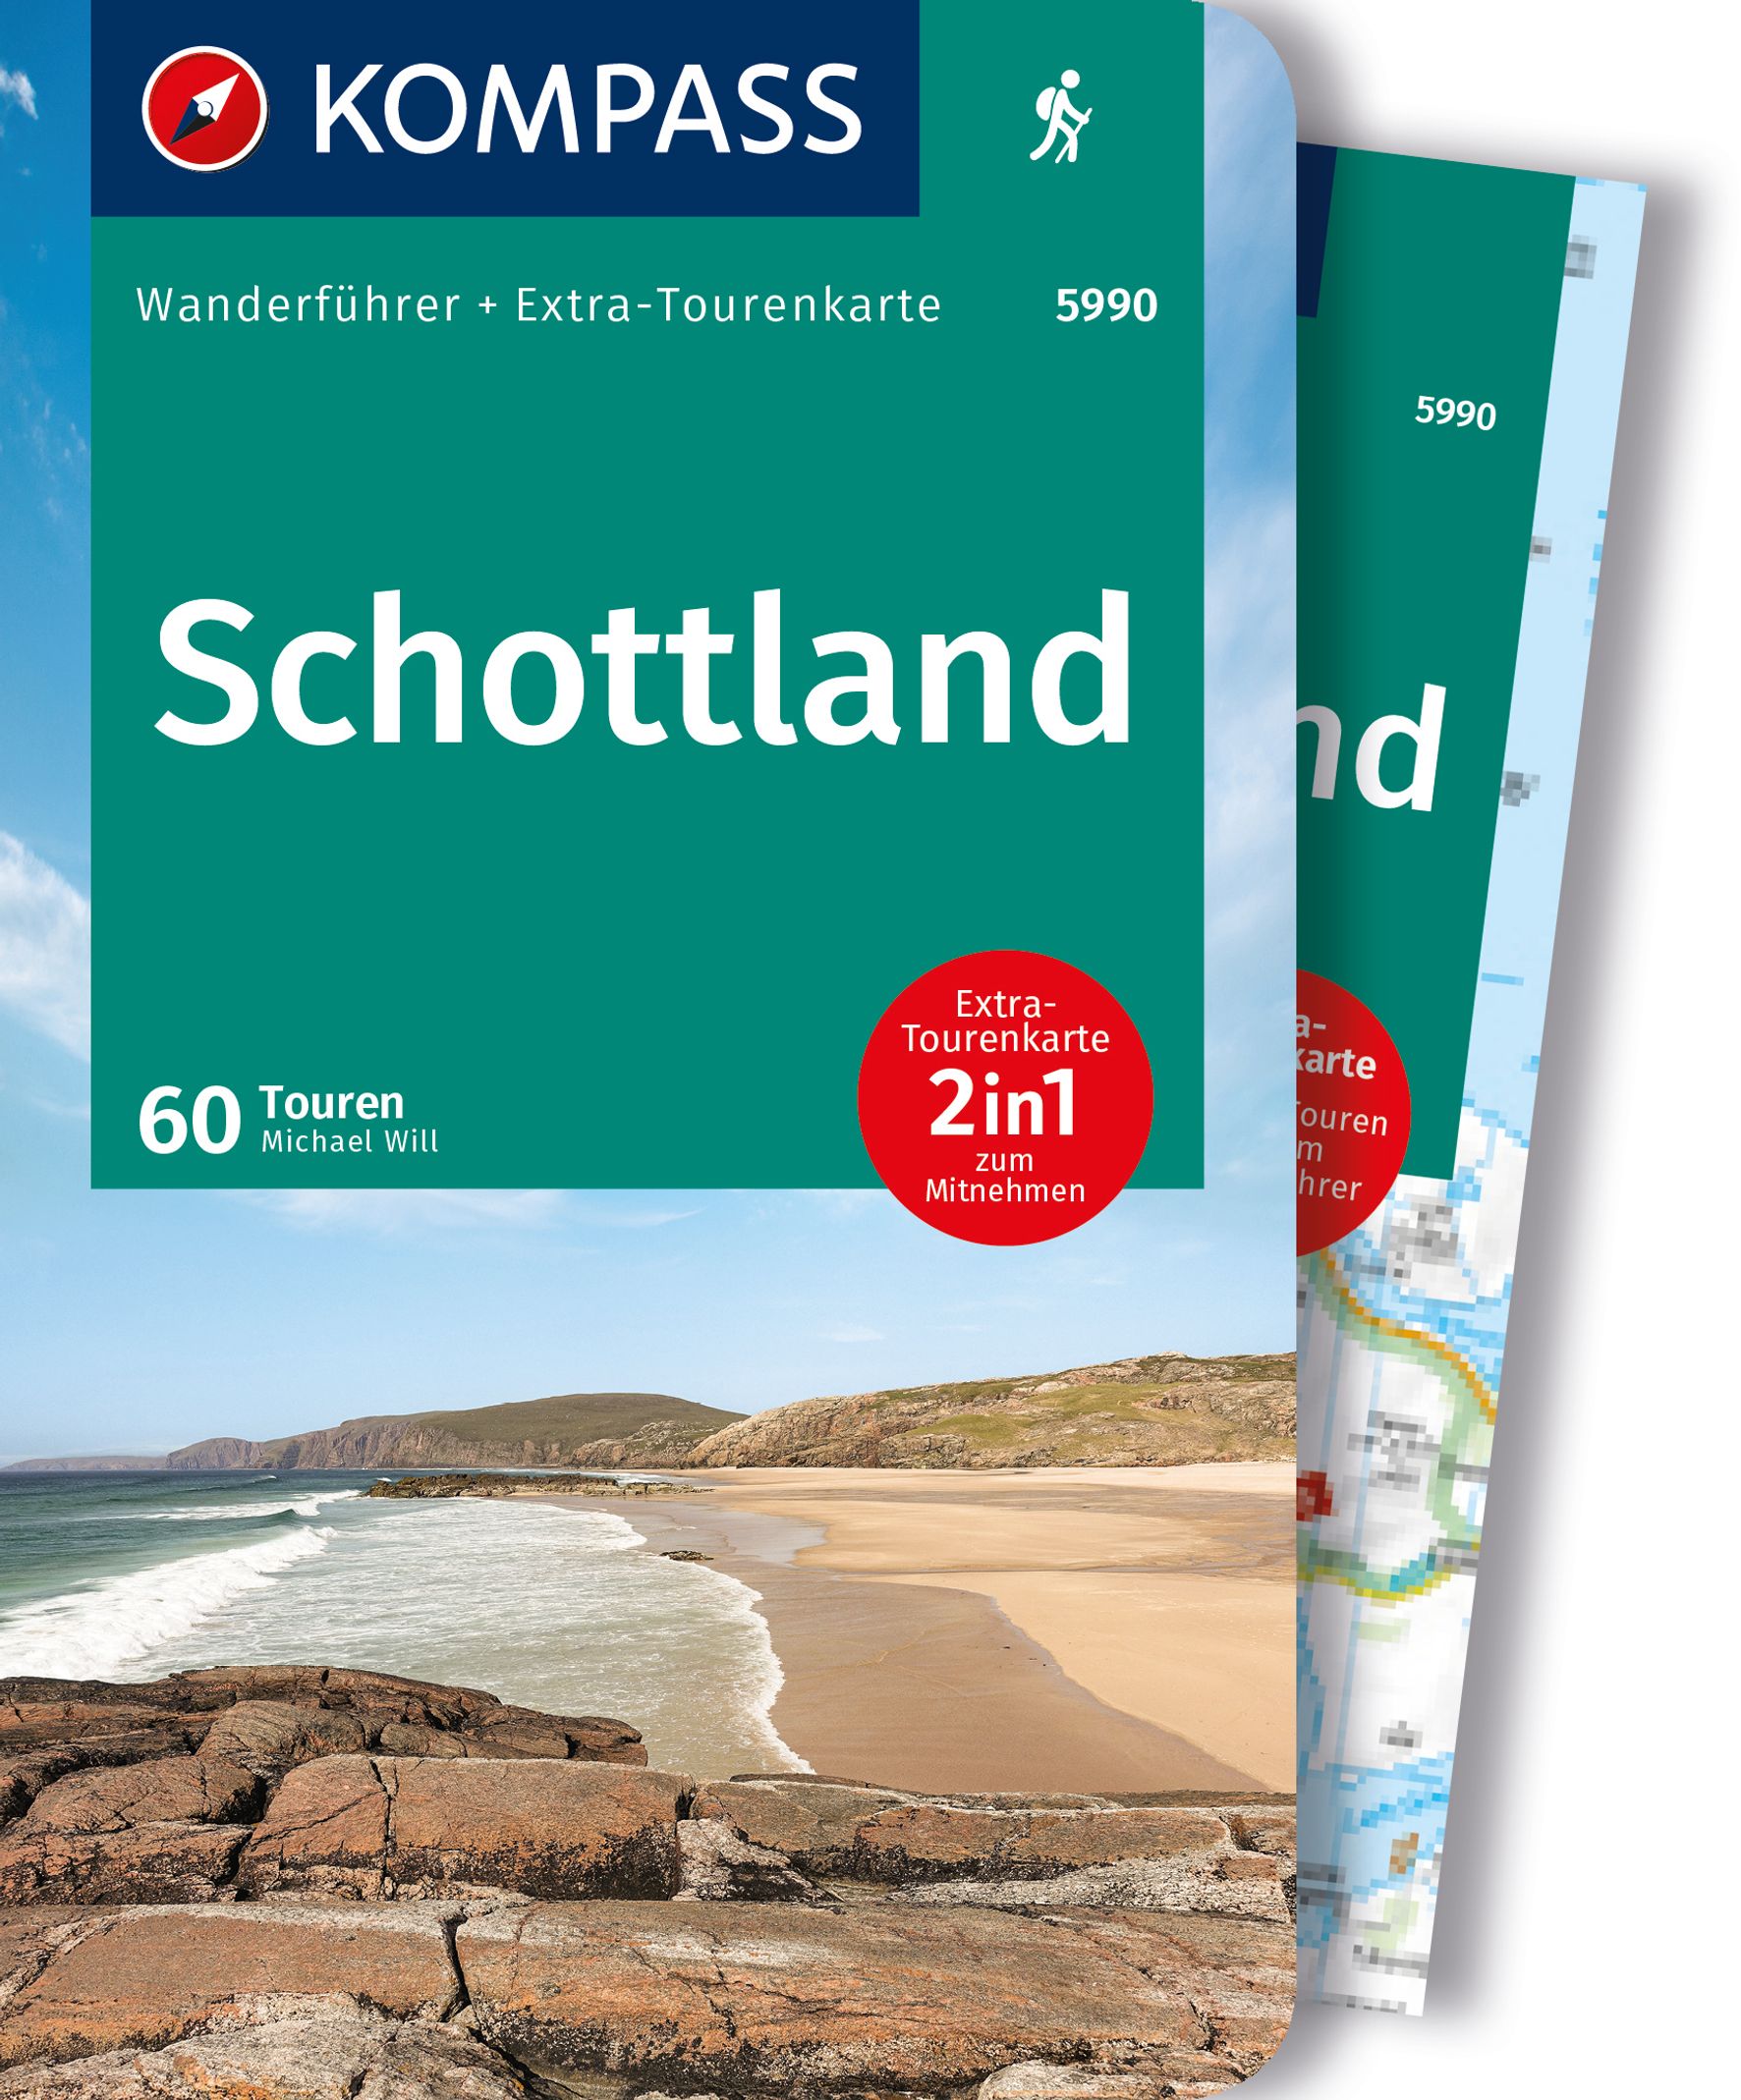 MAIRDUMONT Schottland, Wanderungen an den Küsten und in den Highlands, 60 Touren mit Extra-Tourenkarte